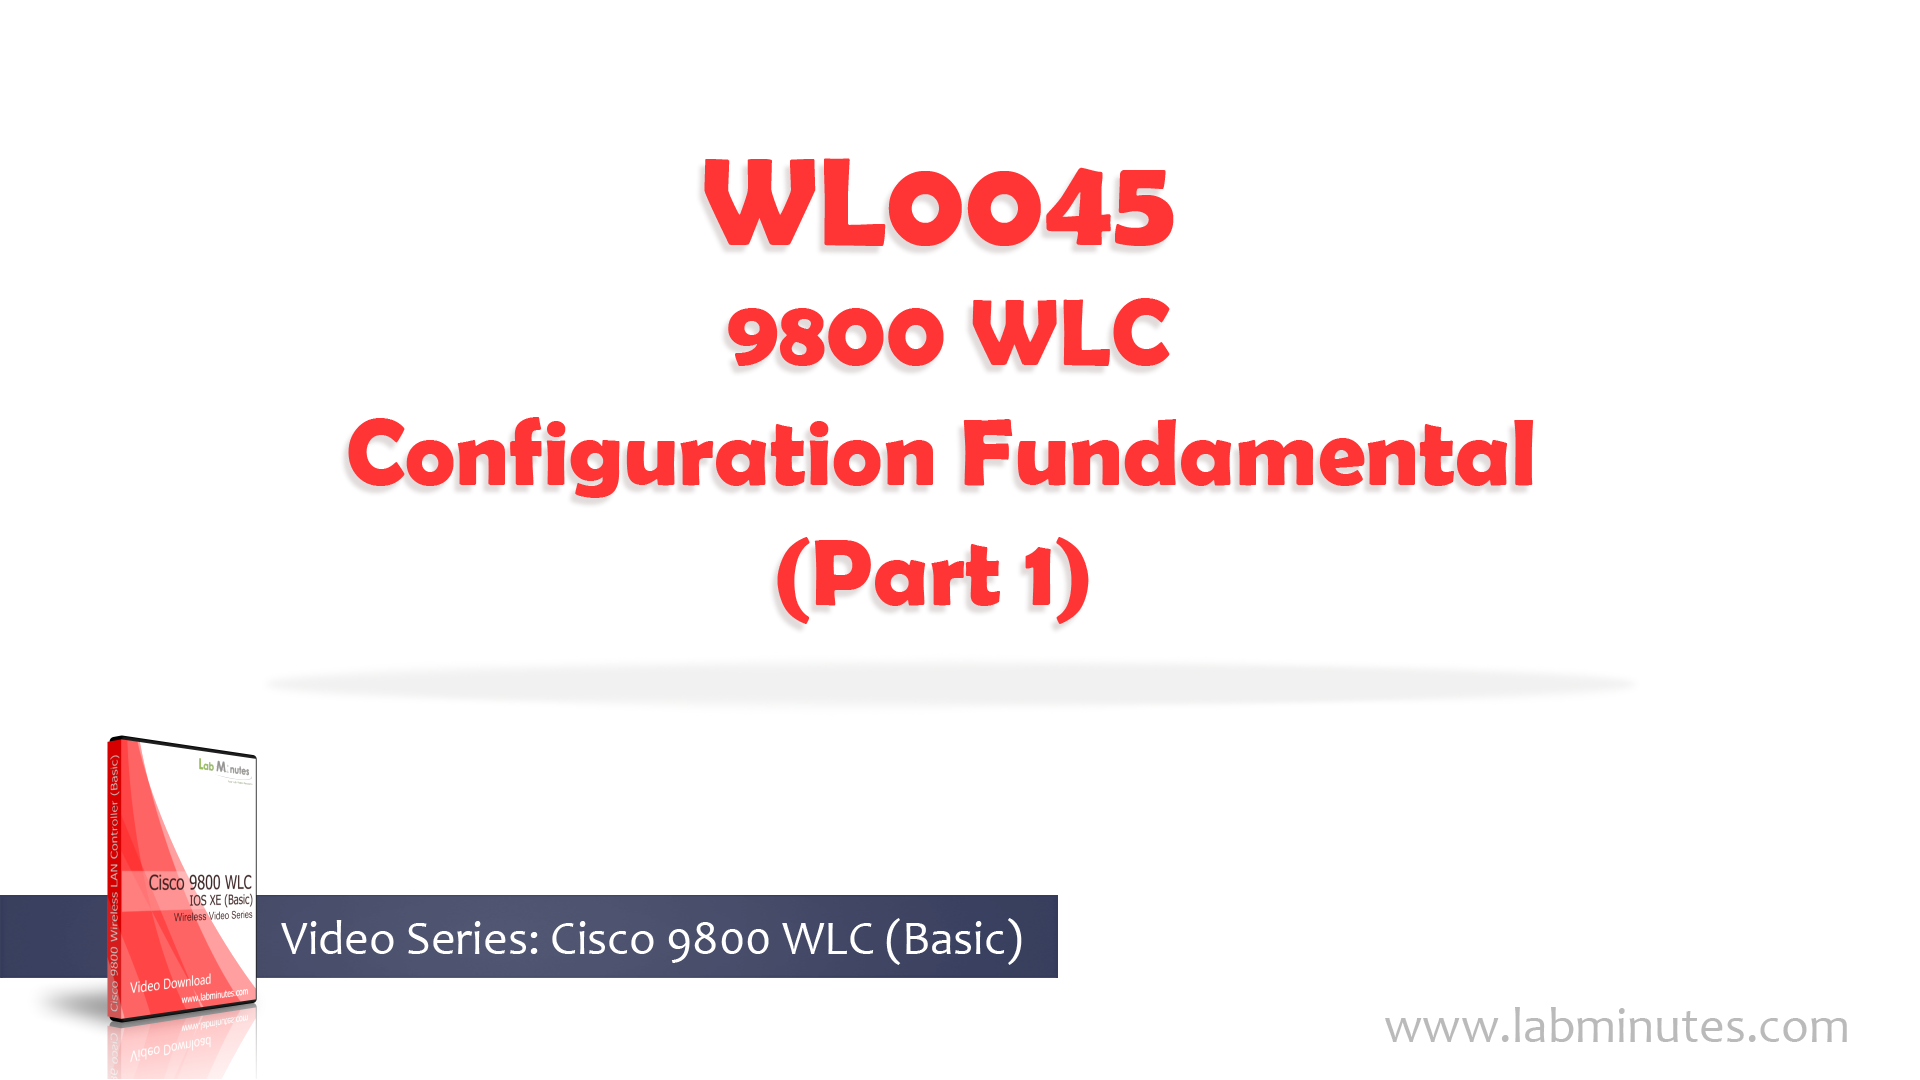 WL0045-1.jpg